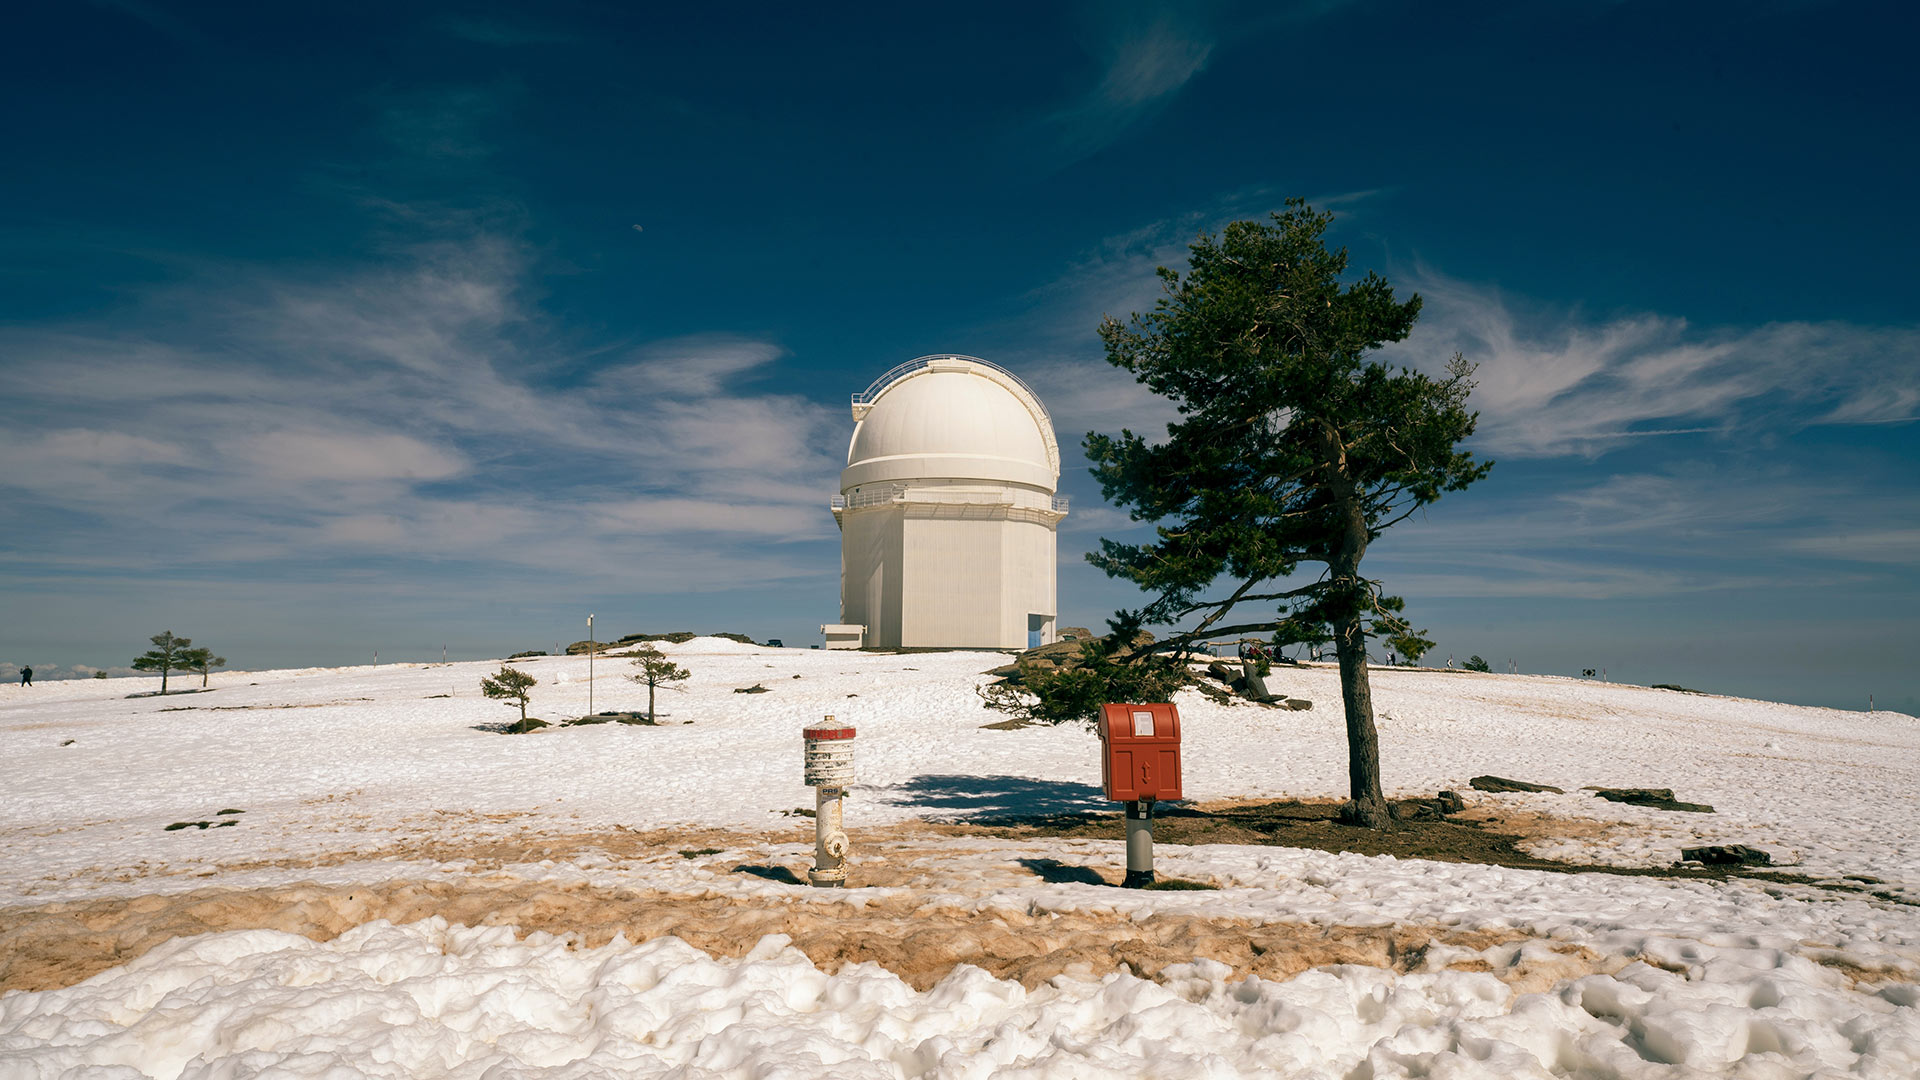 El observatorio de Calar alto, situado en la Sierra de los Filabres. Recogiendo Montañas valles y cuevas en un único sitio